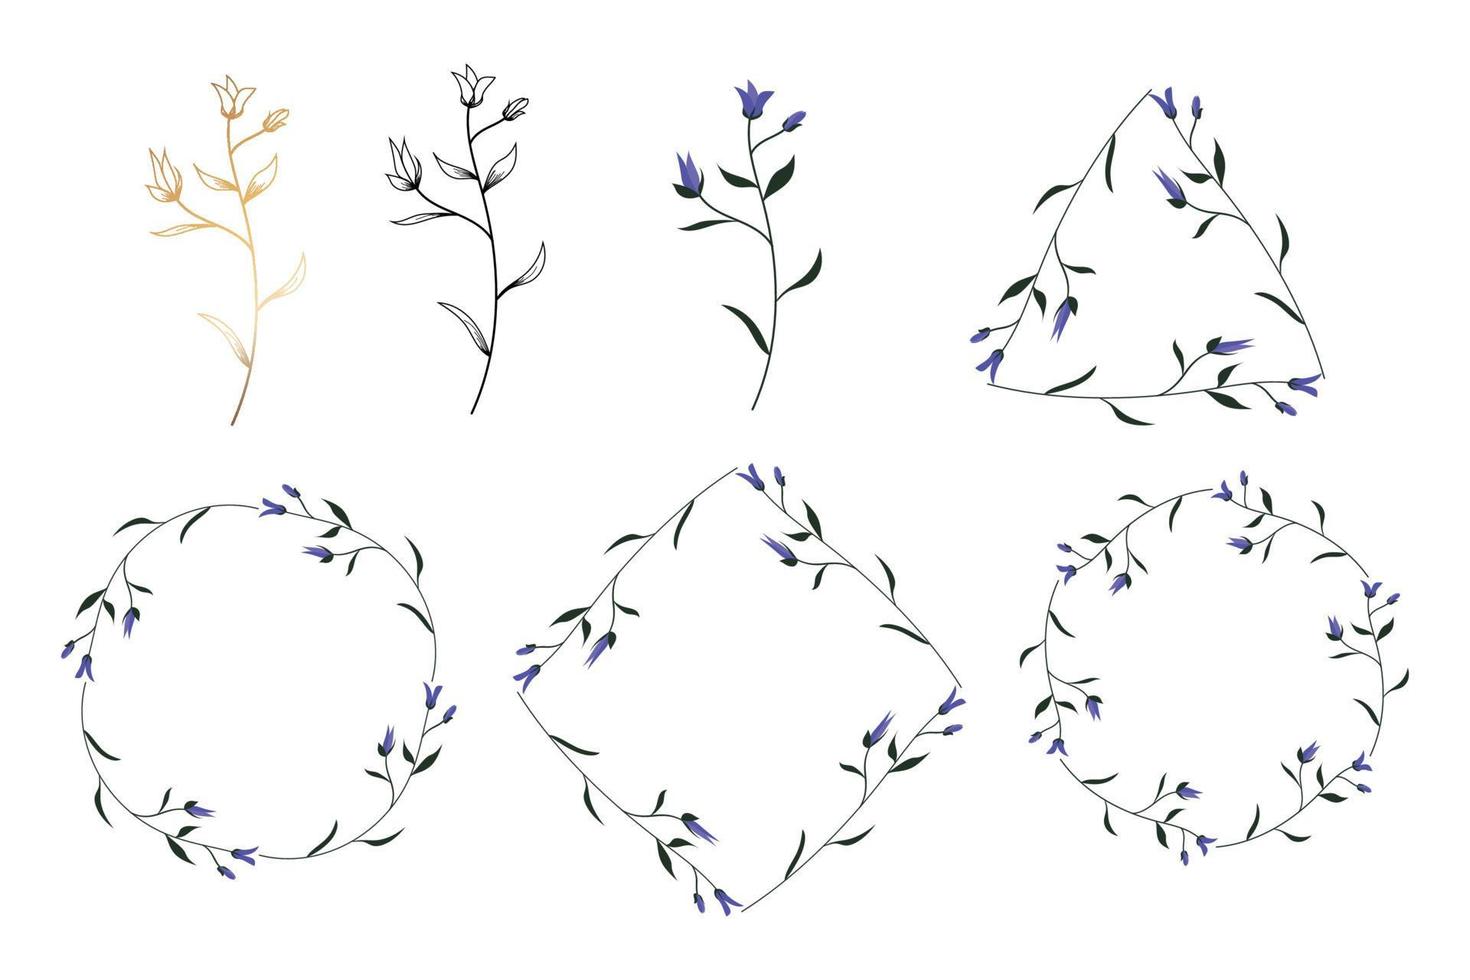 Blumenzweig. handgezeichnetes hochzeitskraut, elegante blattzierpflanze für einladungskartendesign. Botanische Landschaft vektor